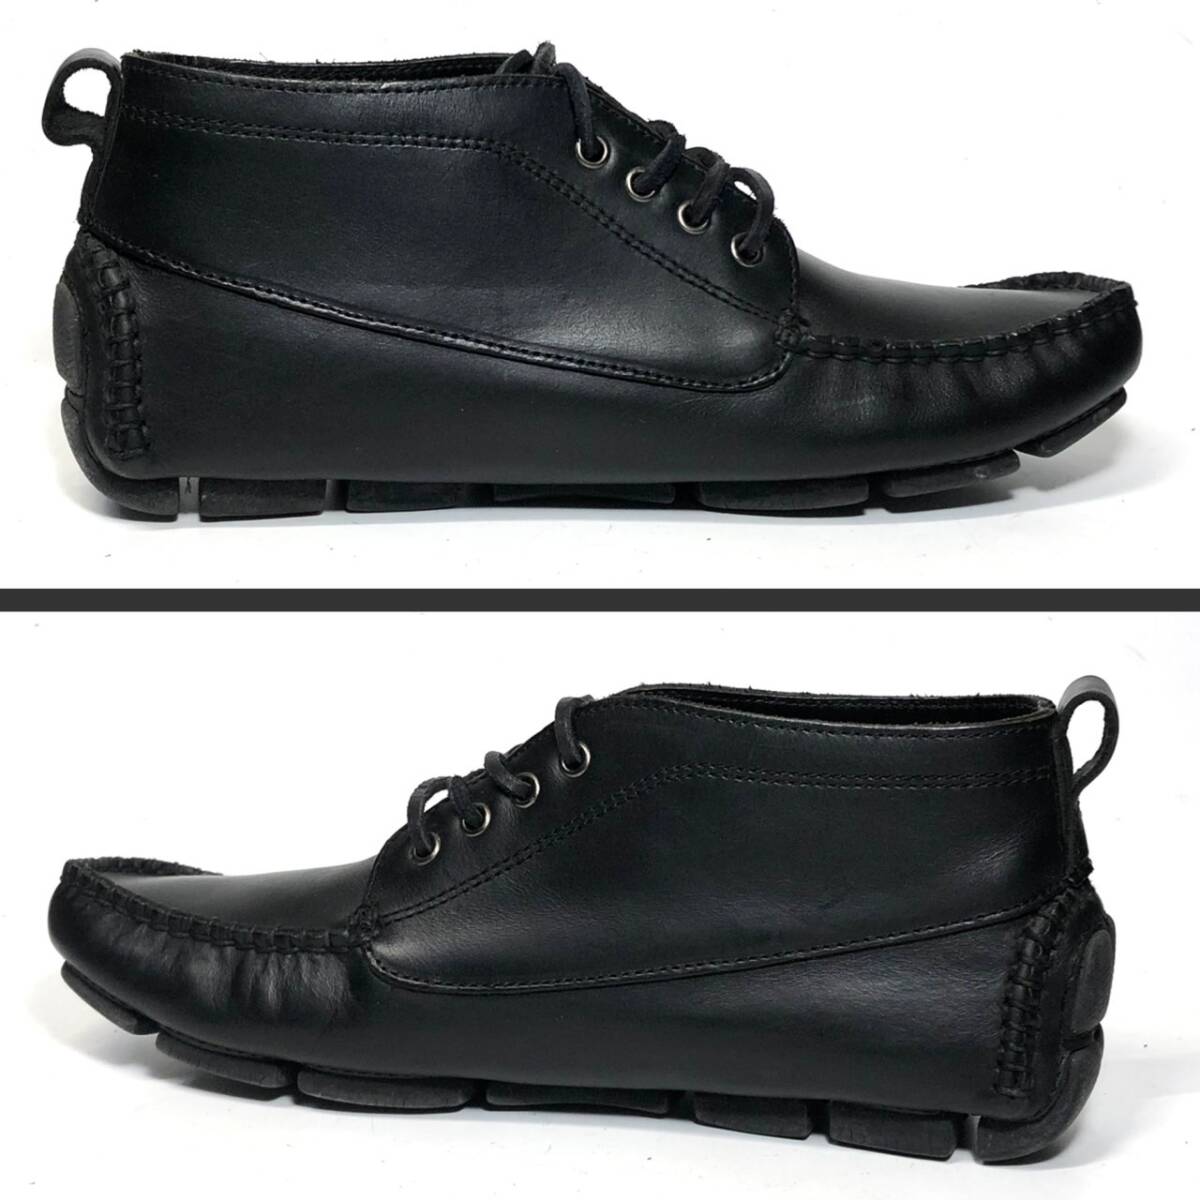  контрольный BC016■HAWKINS SPORT 40  около 25cm-25.5cm  черный   черный   дека  обувь    hawkins   кожаная обувь   кожа   обувь    натуральная кожа   повседневный   подержанный товар  *E7